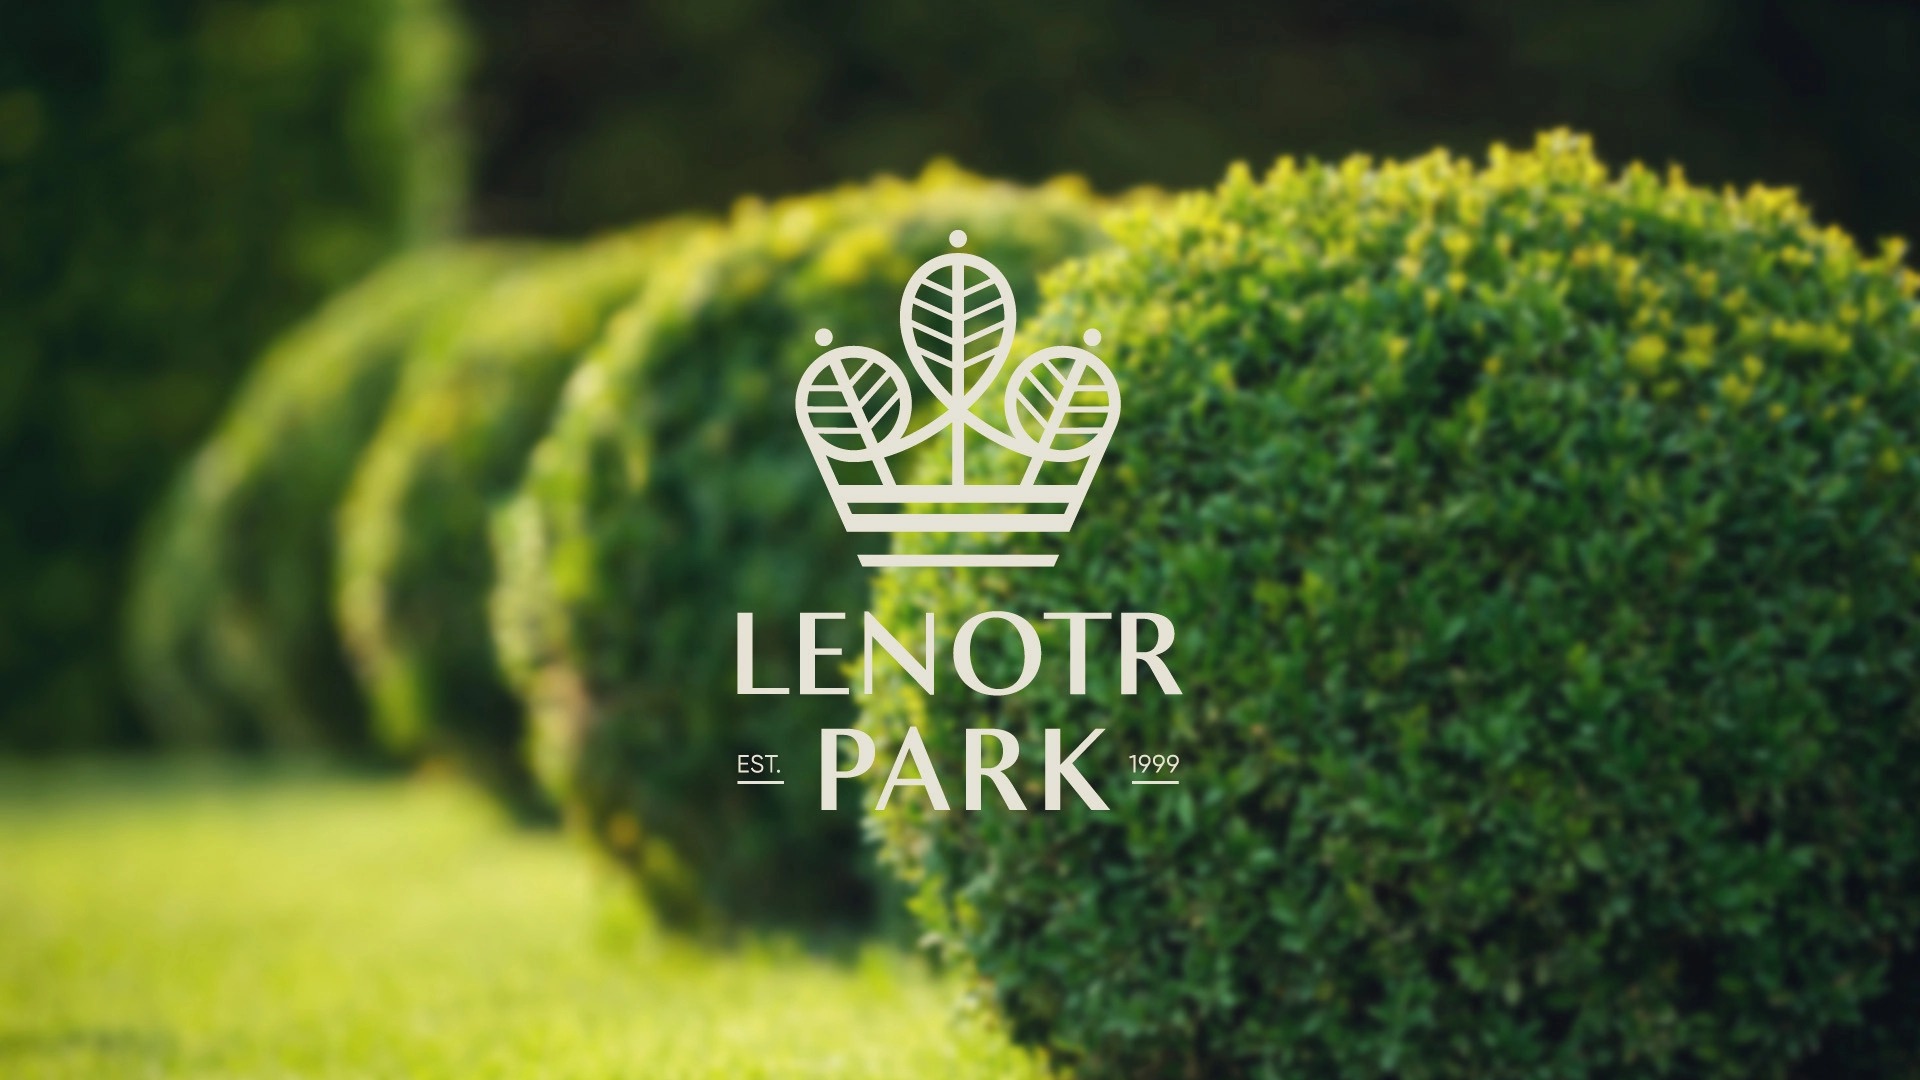 景观设计工作室Lenotr Park品牌视觉设计